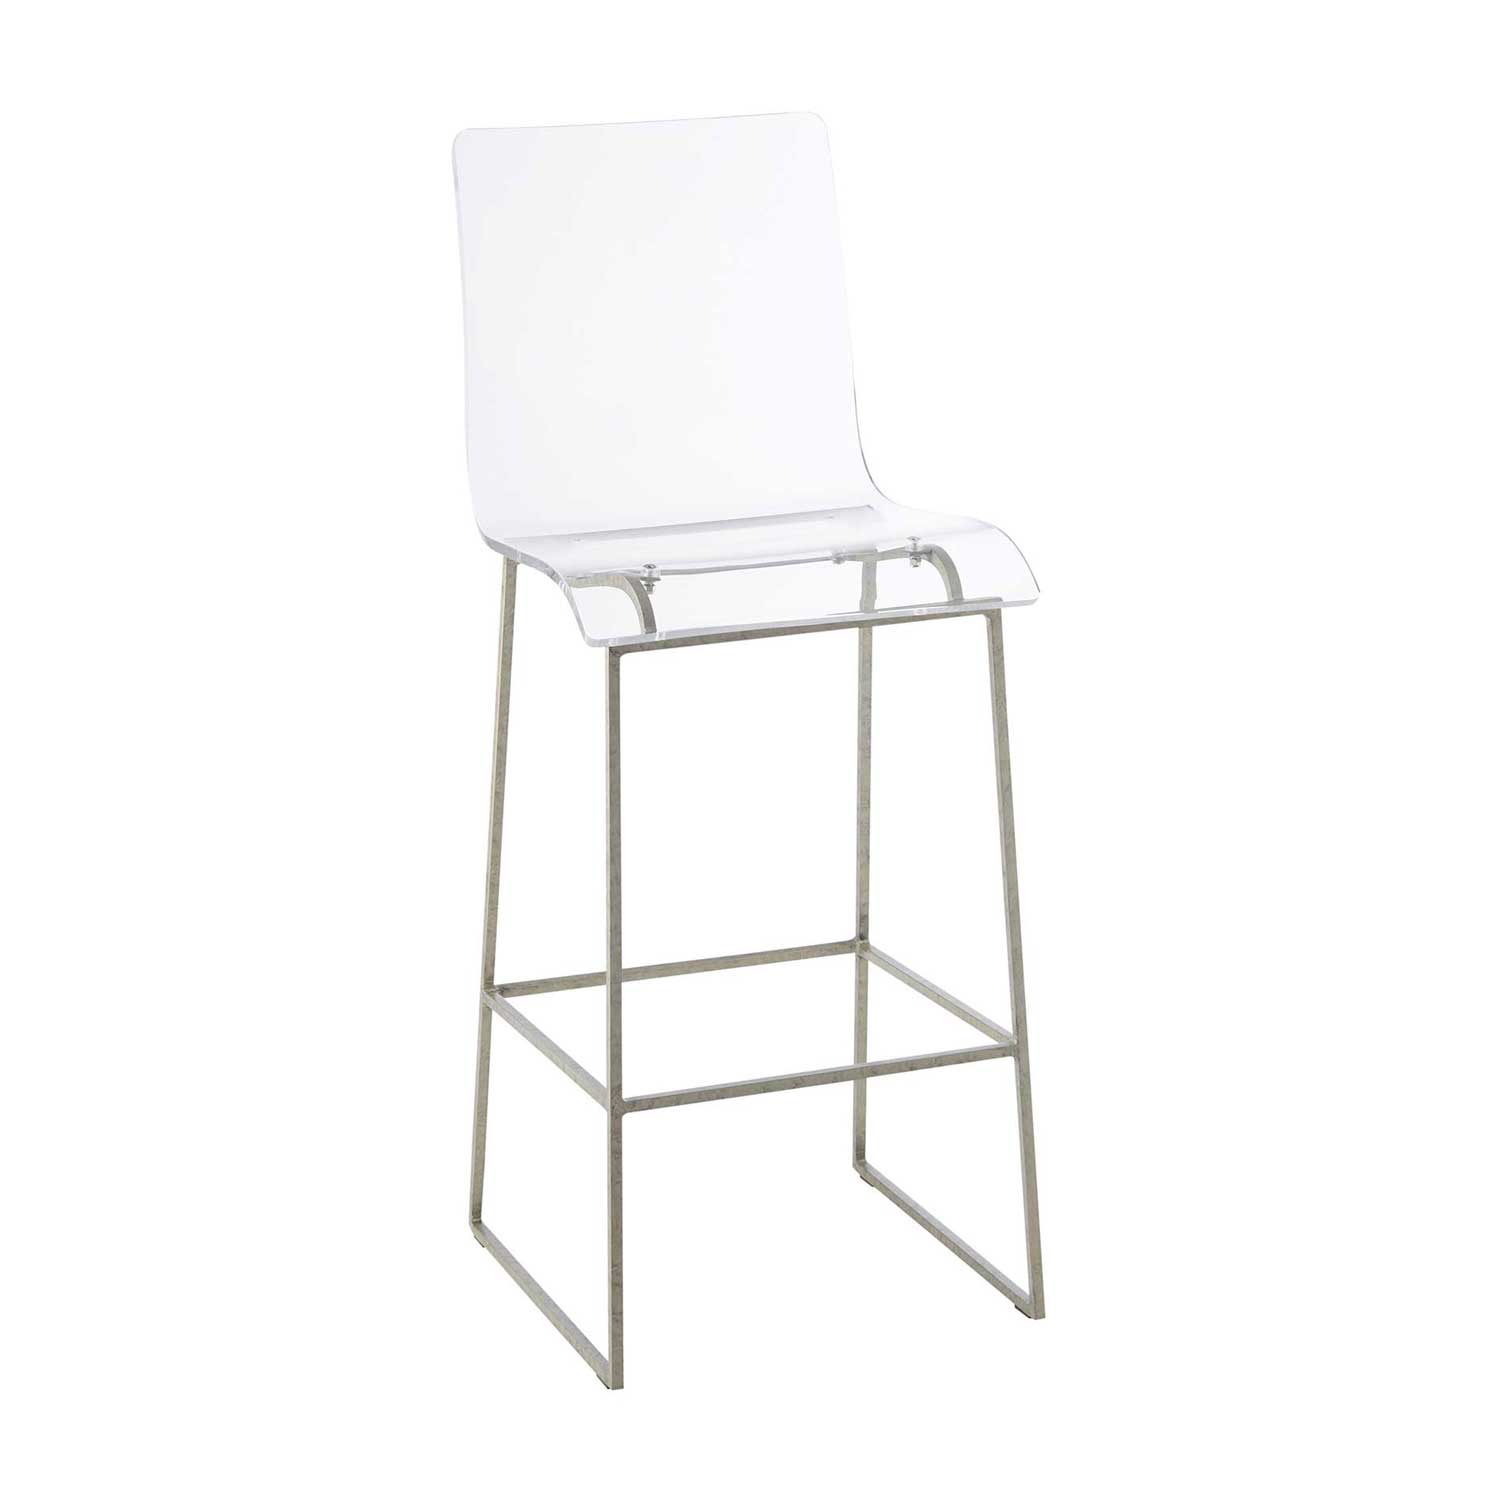 king bar stool – silver thumbnail image